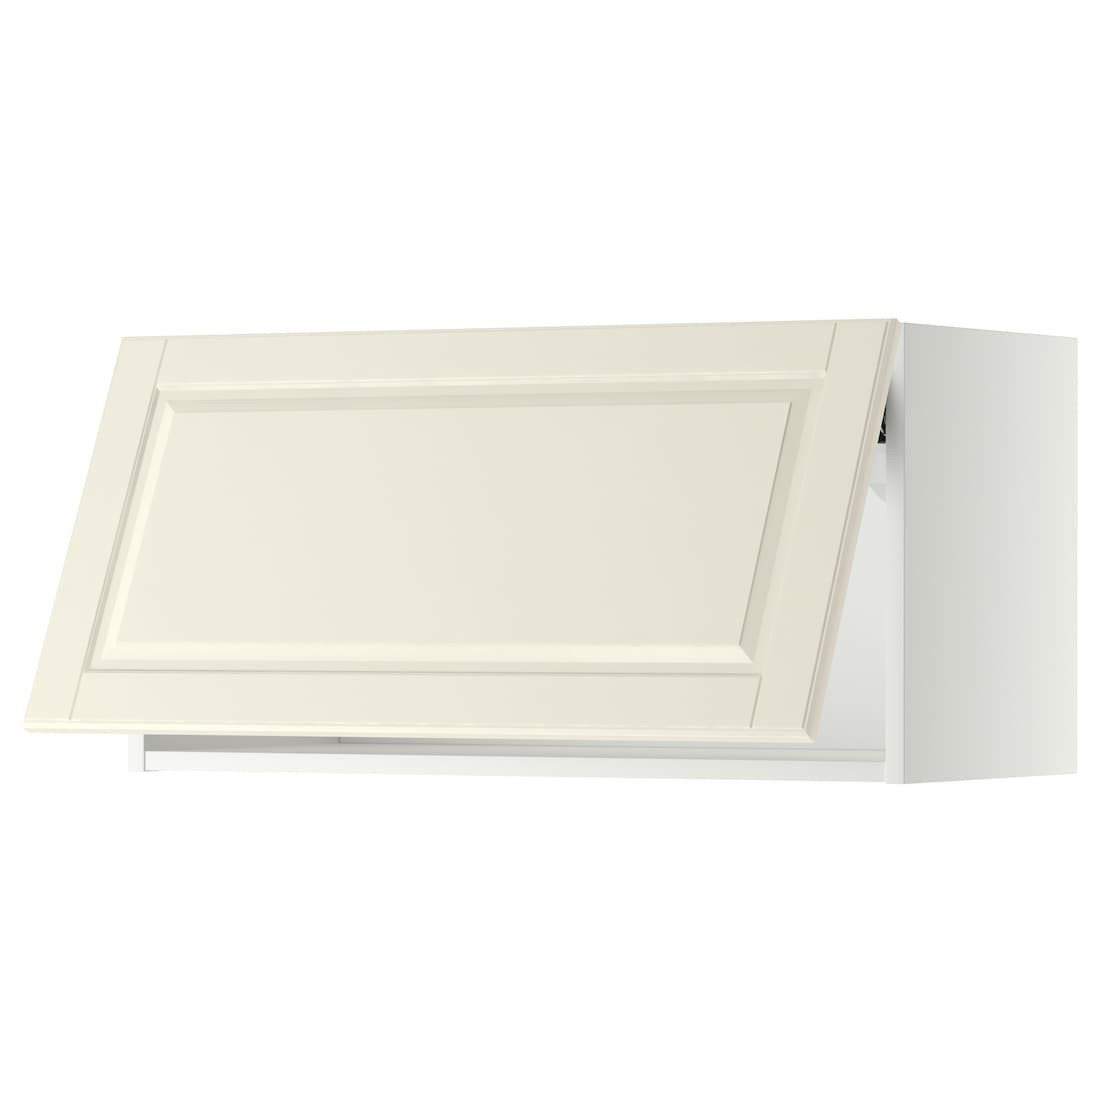 IKEA METOD МЕТОД Навесной горизонтальный шкаф, белый / Bodbyn кремовый, 80x40 см 29391885 293.918.85